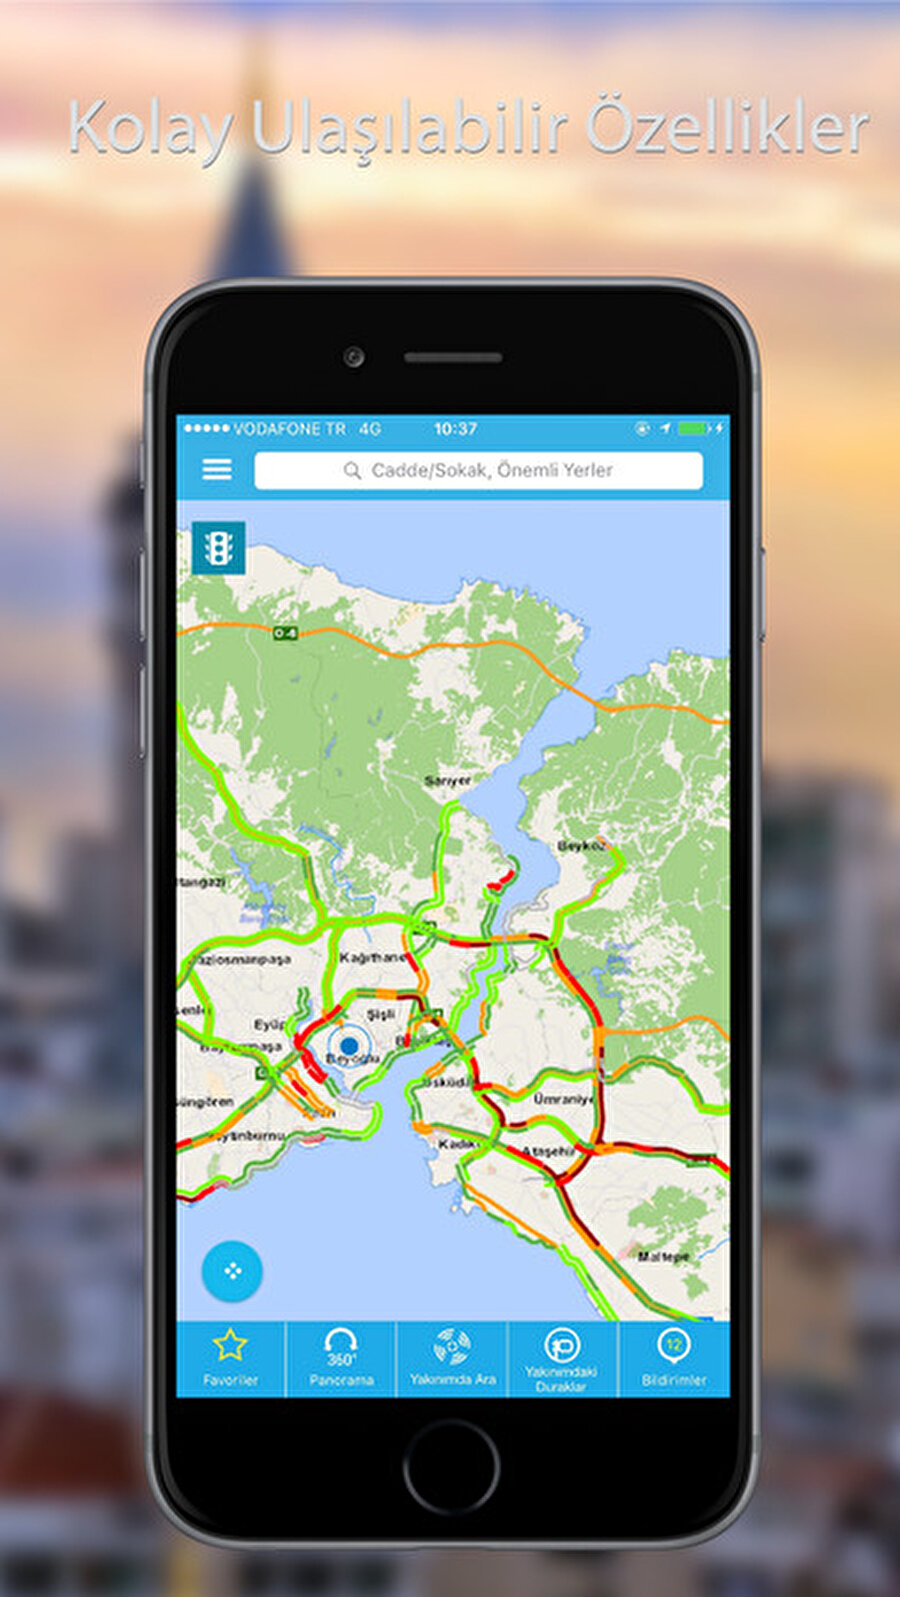 İstanbul Şehir Haritası
Doğrudan İstanbul Büyükşehir Belediyesi tarafından geliştirilen İstanbul Şehir Haritası uygulaması; trafik durumu, güzergah analizi, yakındaki duraklar, hatlar, uydu fotoğrafları, önemli yerler ve panoramik görüntülerle birlikte özel veriler sunuyor. 

İstanbul Şehir Haritası uygulamasını Android için buradan iPhone için de buradan indirebilirsiniz.